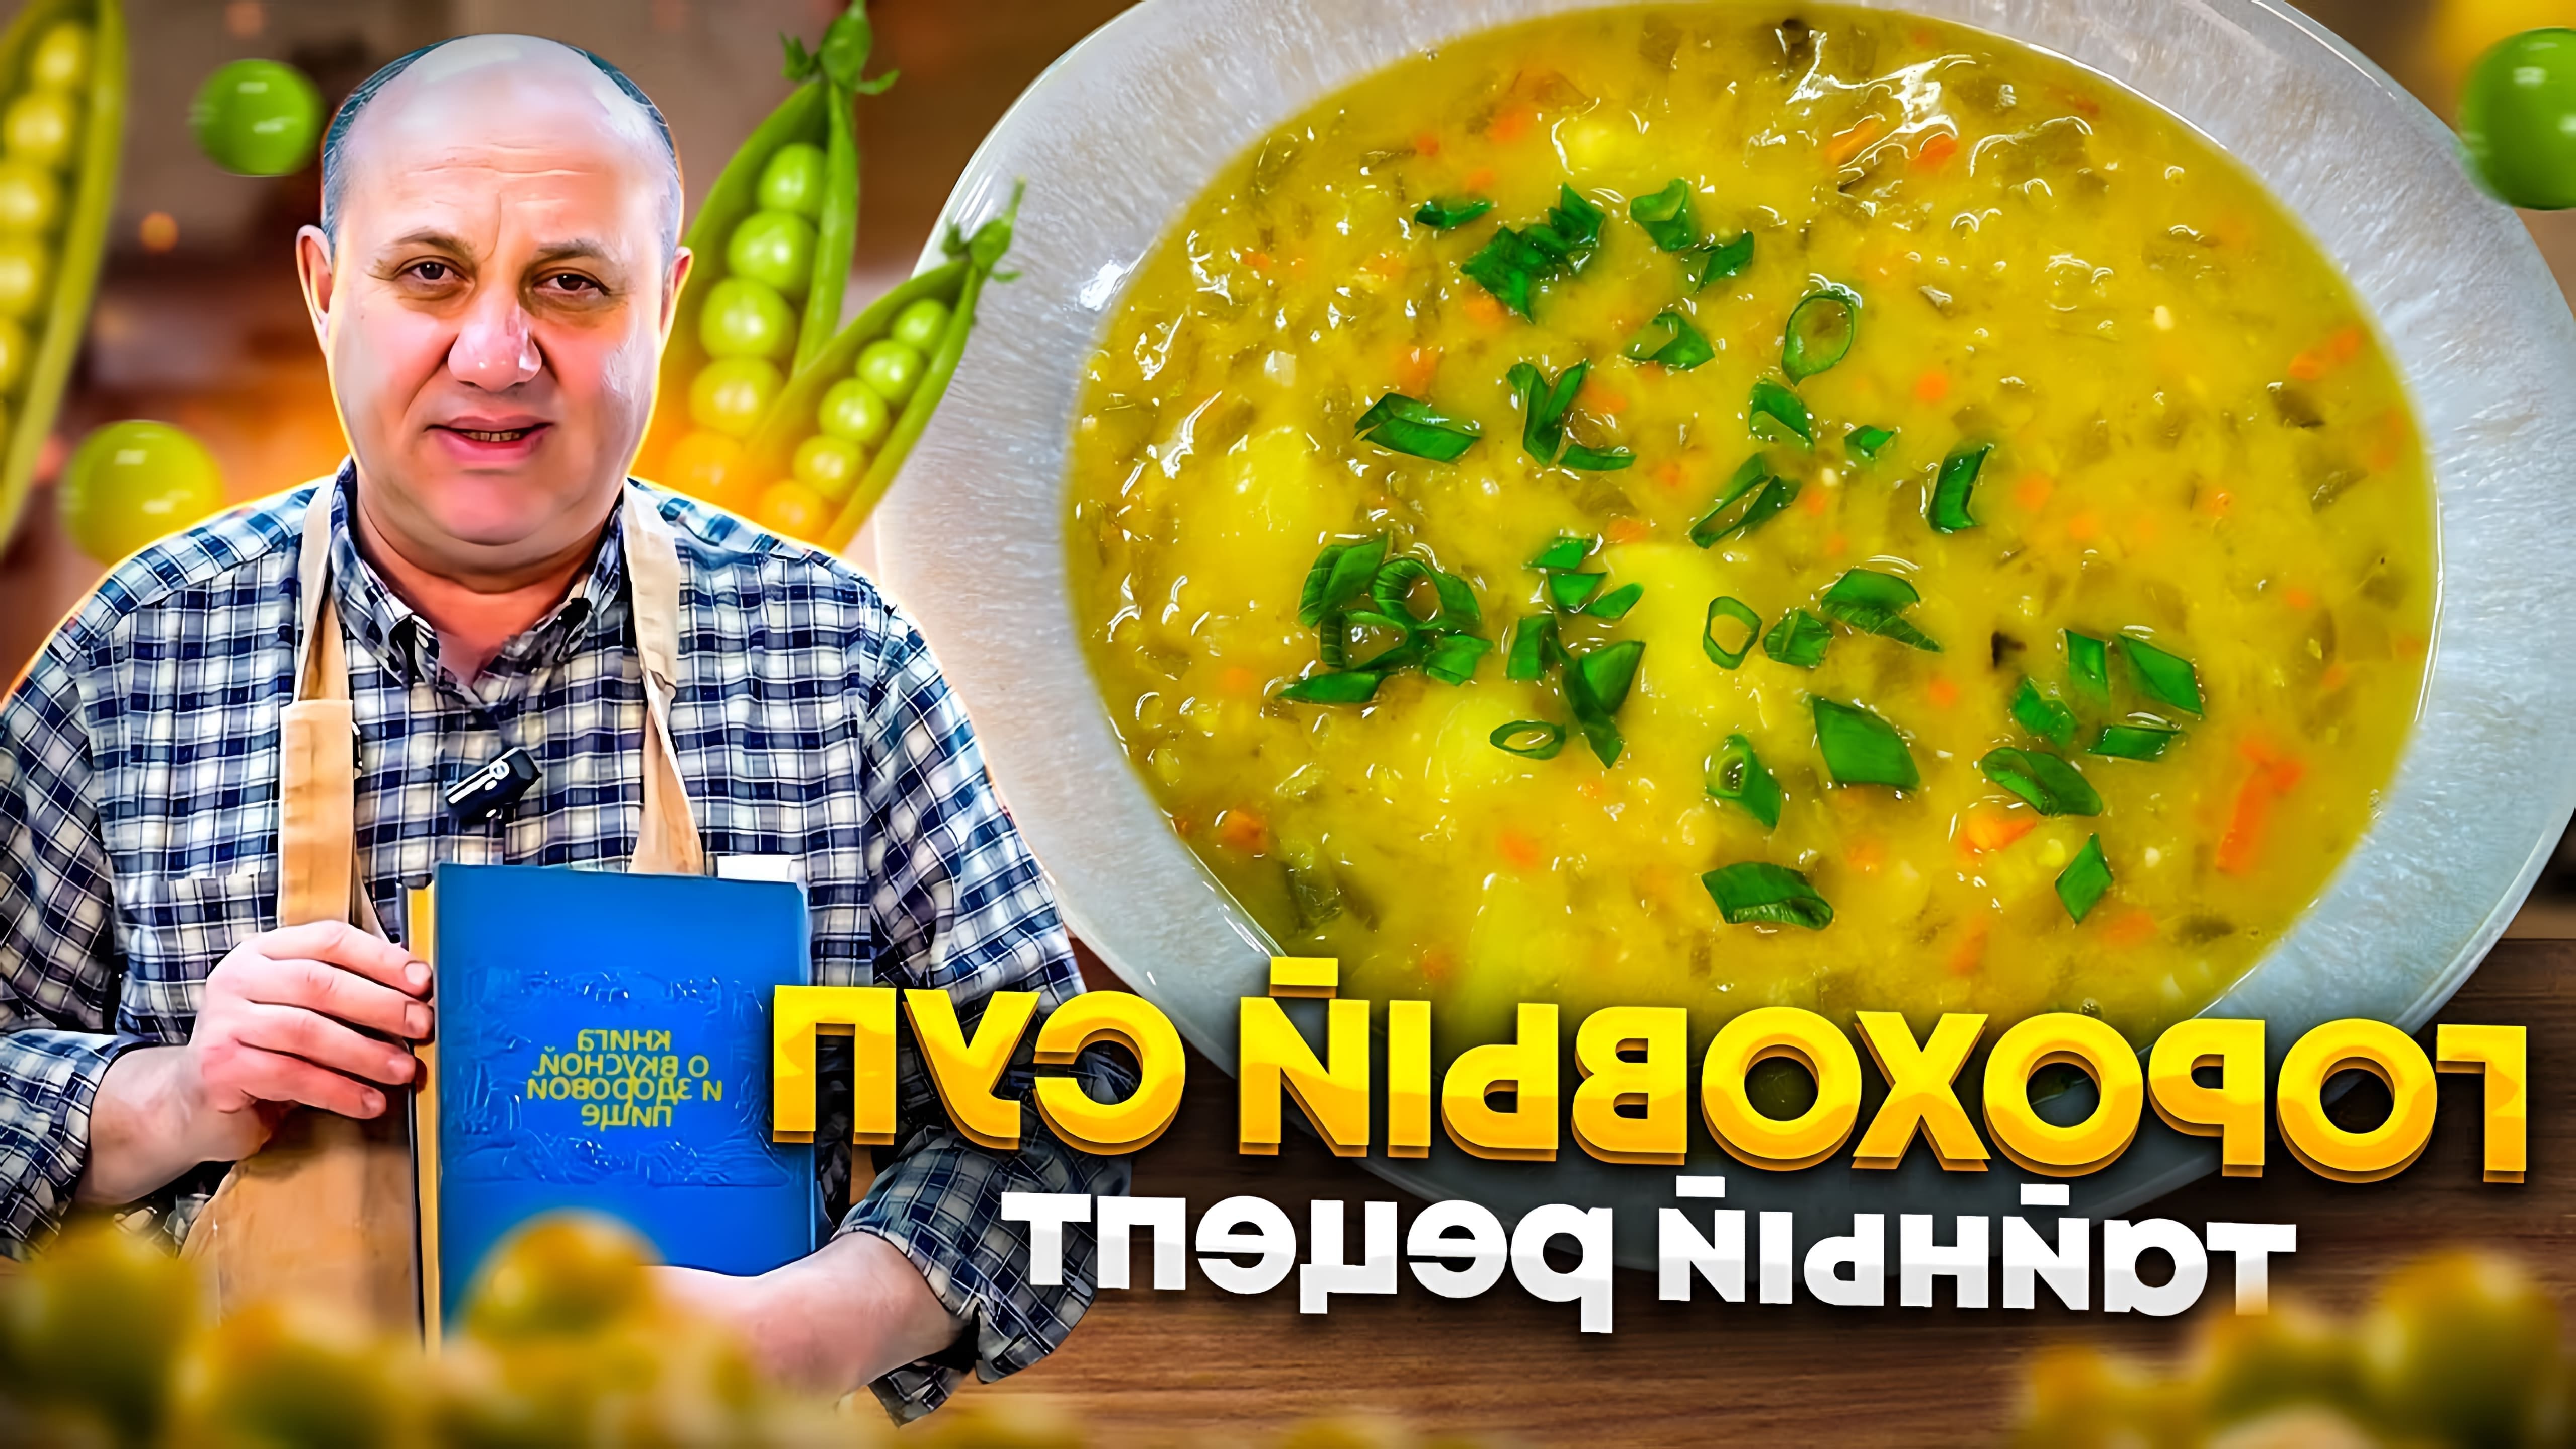 Видео демонстрирует рецепт горохового супа с секретным ингредиентом - маринованными огурцами